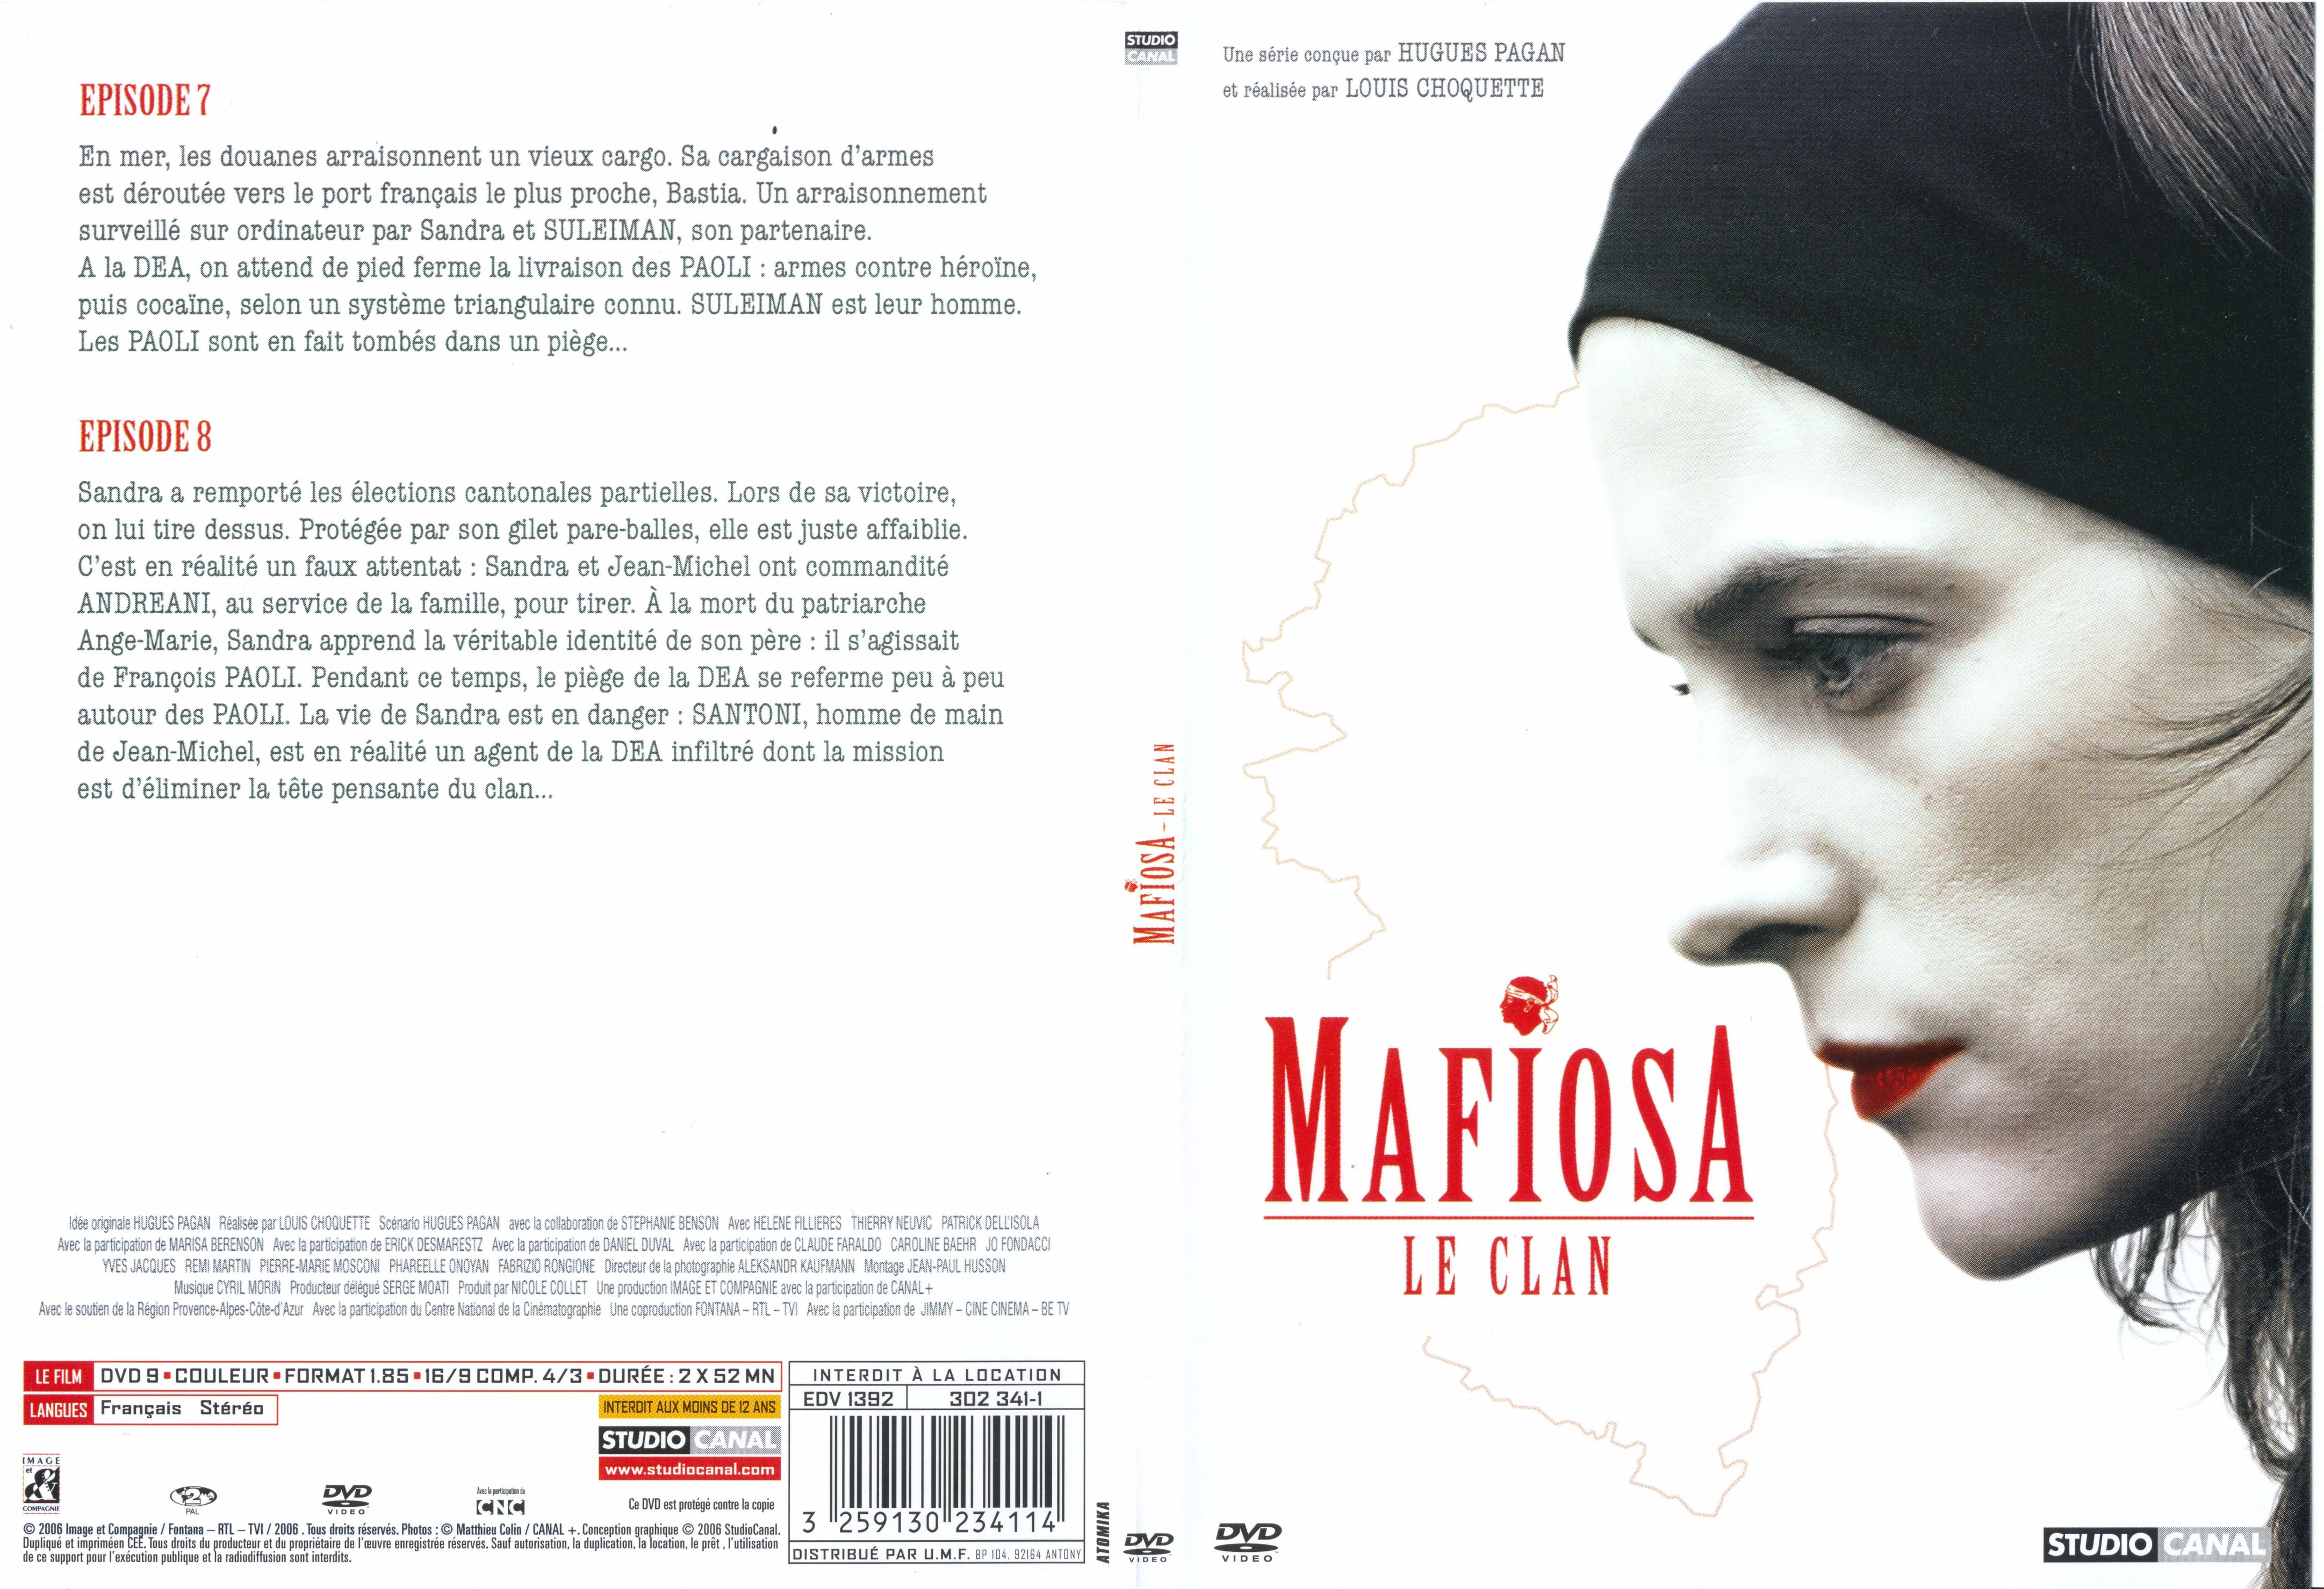 Jaquette DVD Mafiosa dvd 3